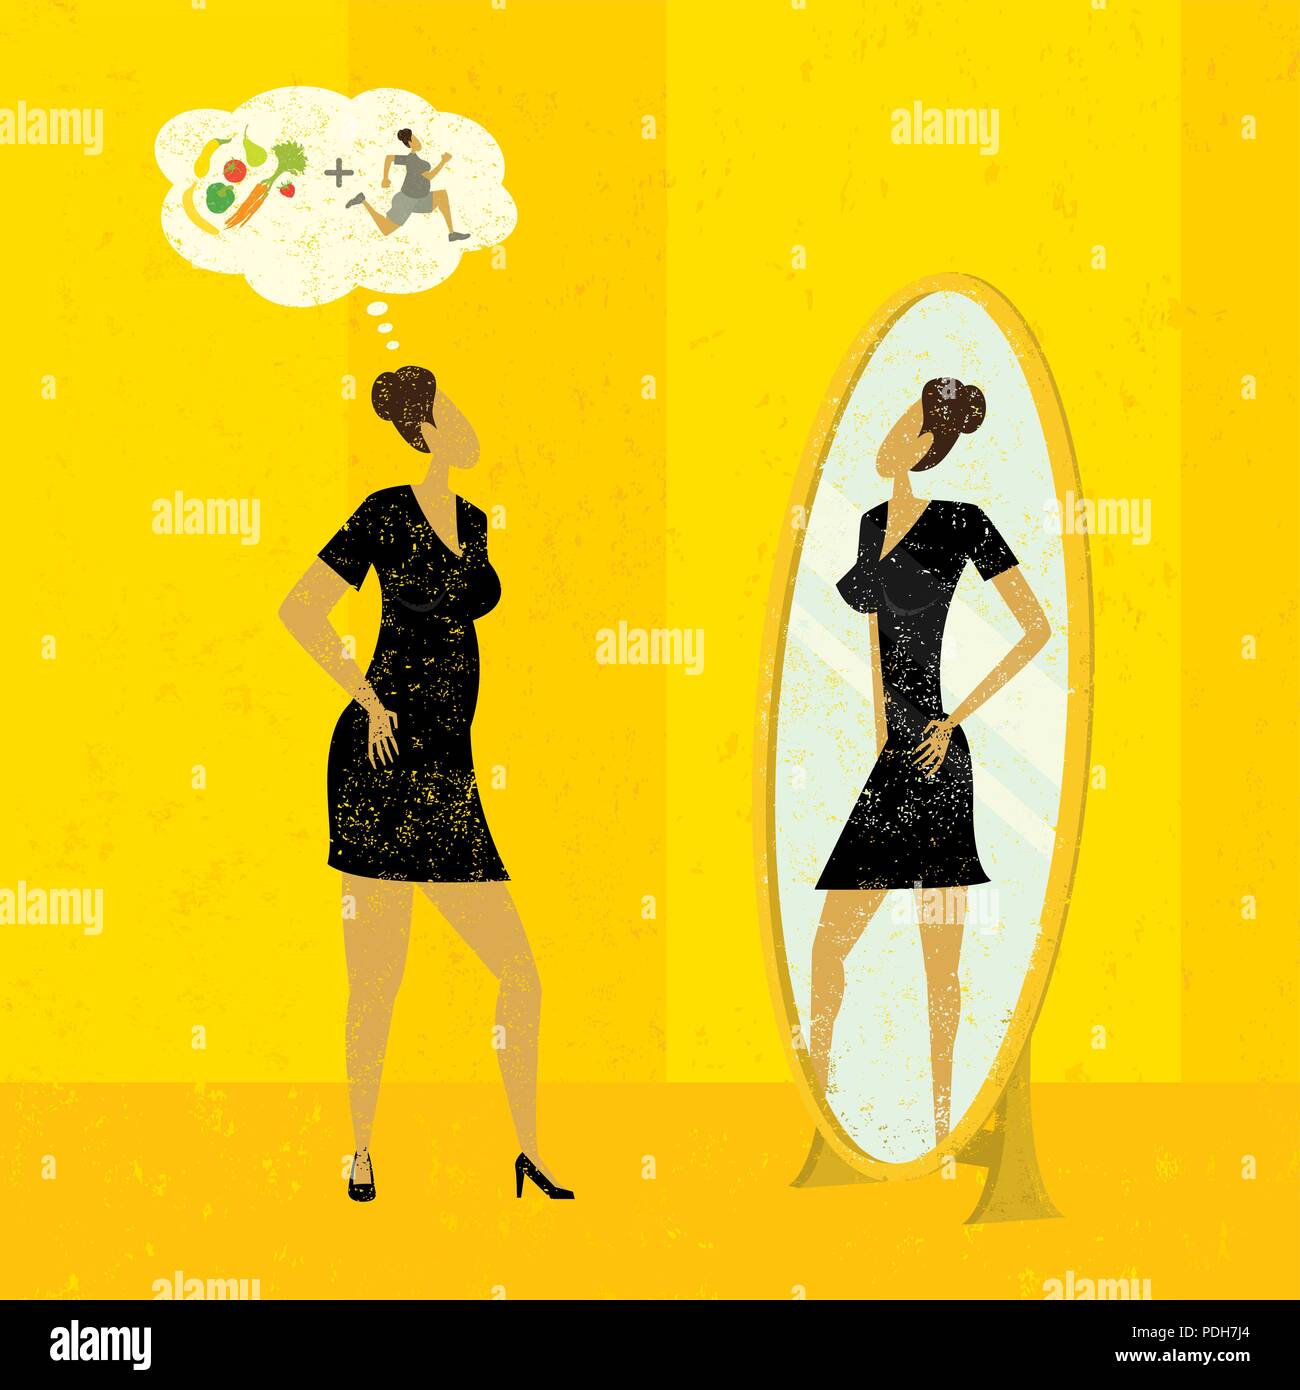 Immaginare una figura più snella. Una donna guarda in uno specchio e vede la versione più sottile di se stessa che si può ottenere con la dieta ed esercizio fisico. Illustrazione Vettoriale